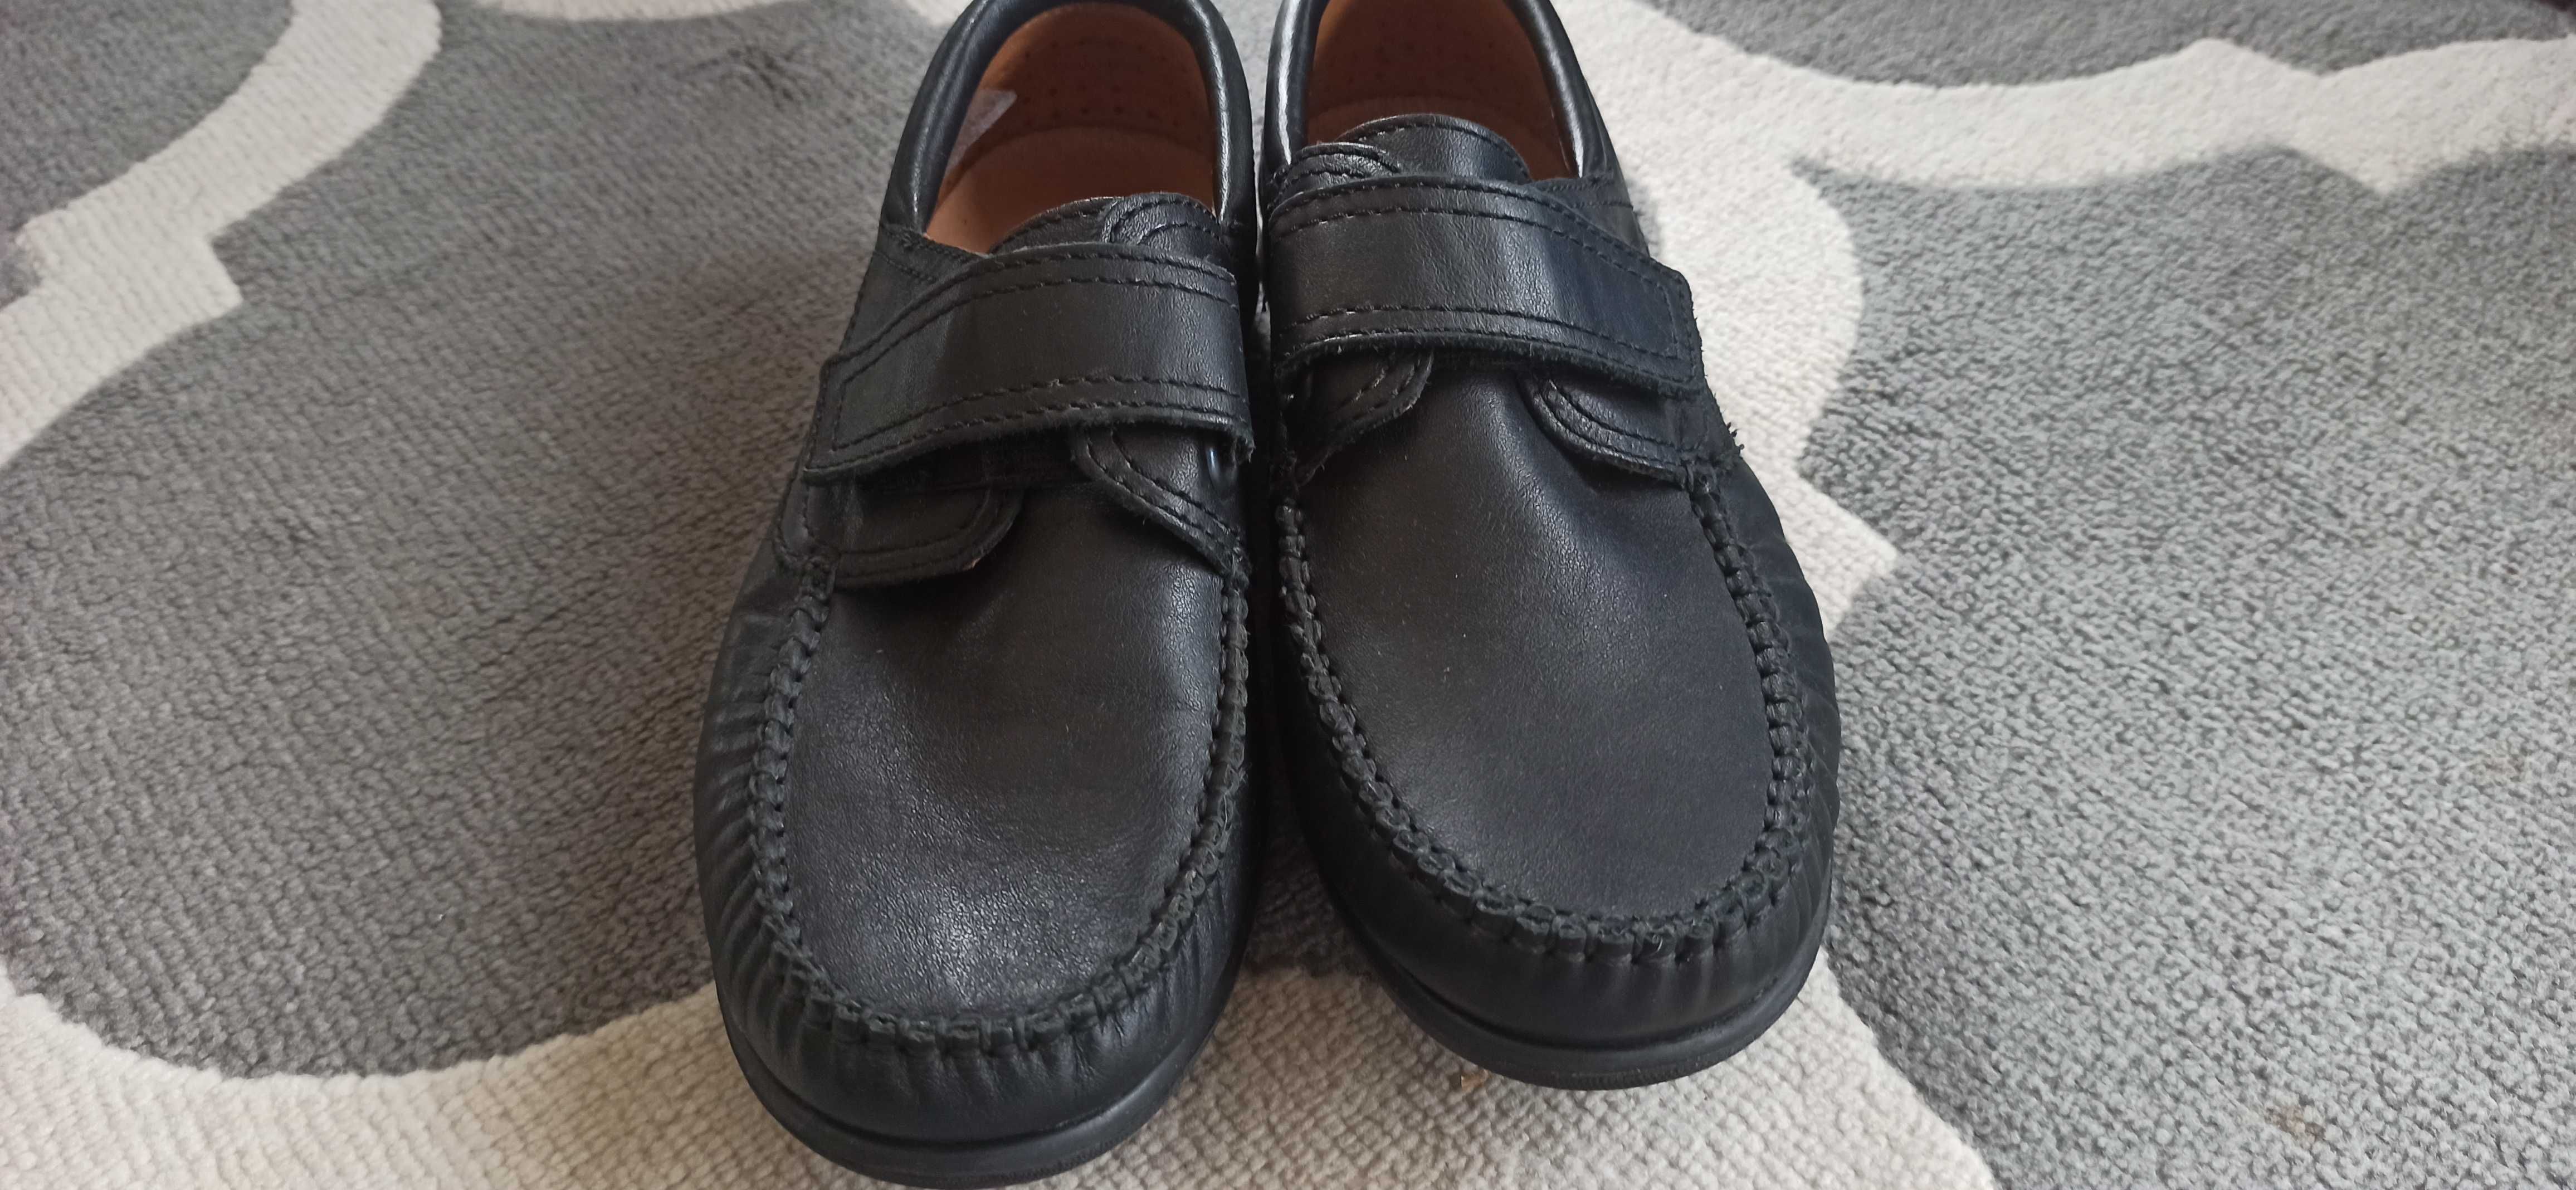 Buty czarne chłopiec mokasyny Primigi 36